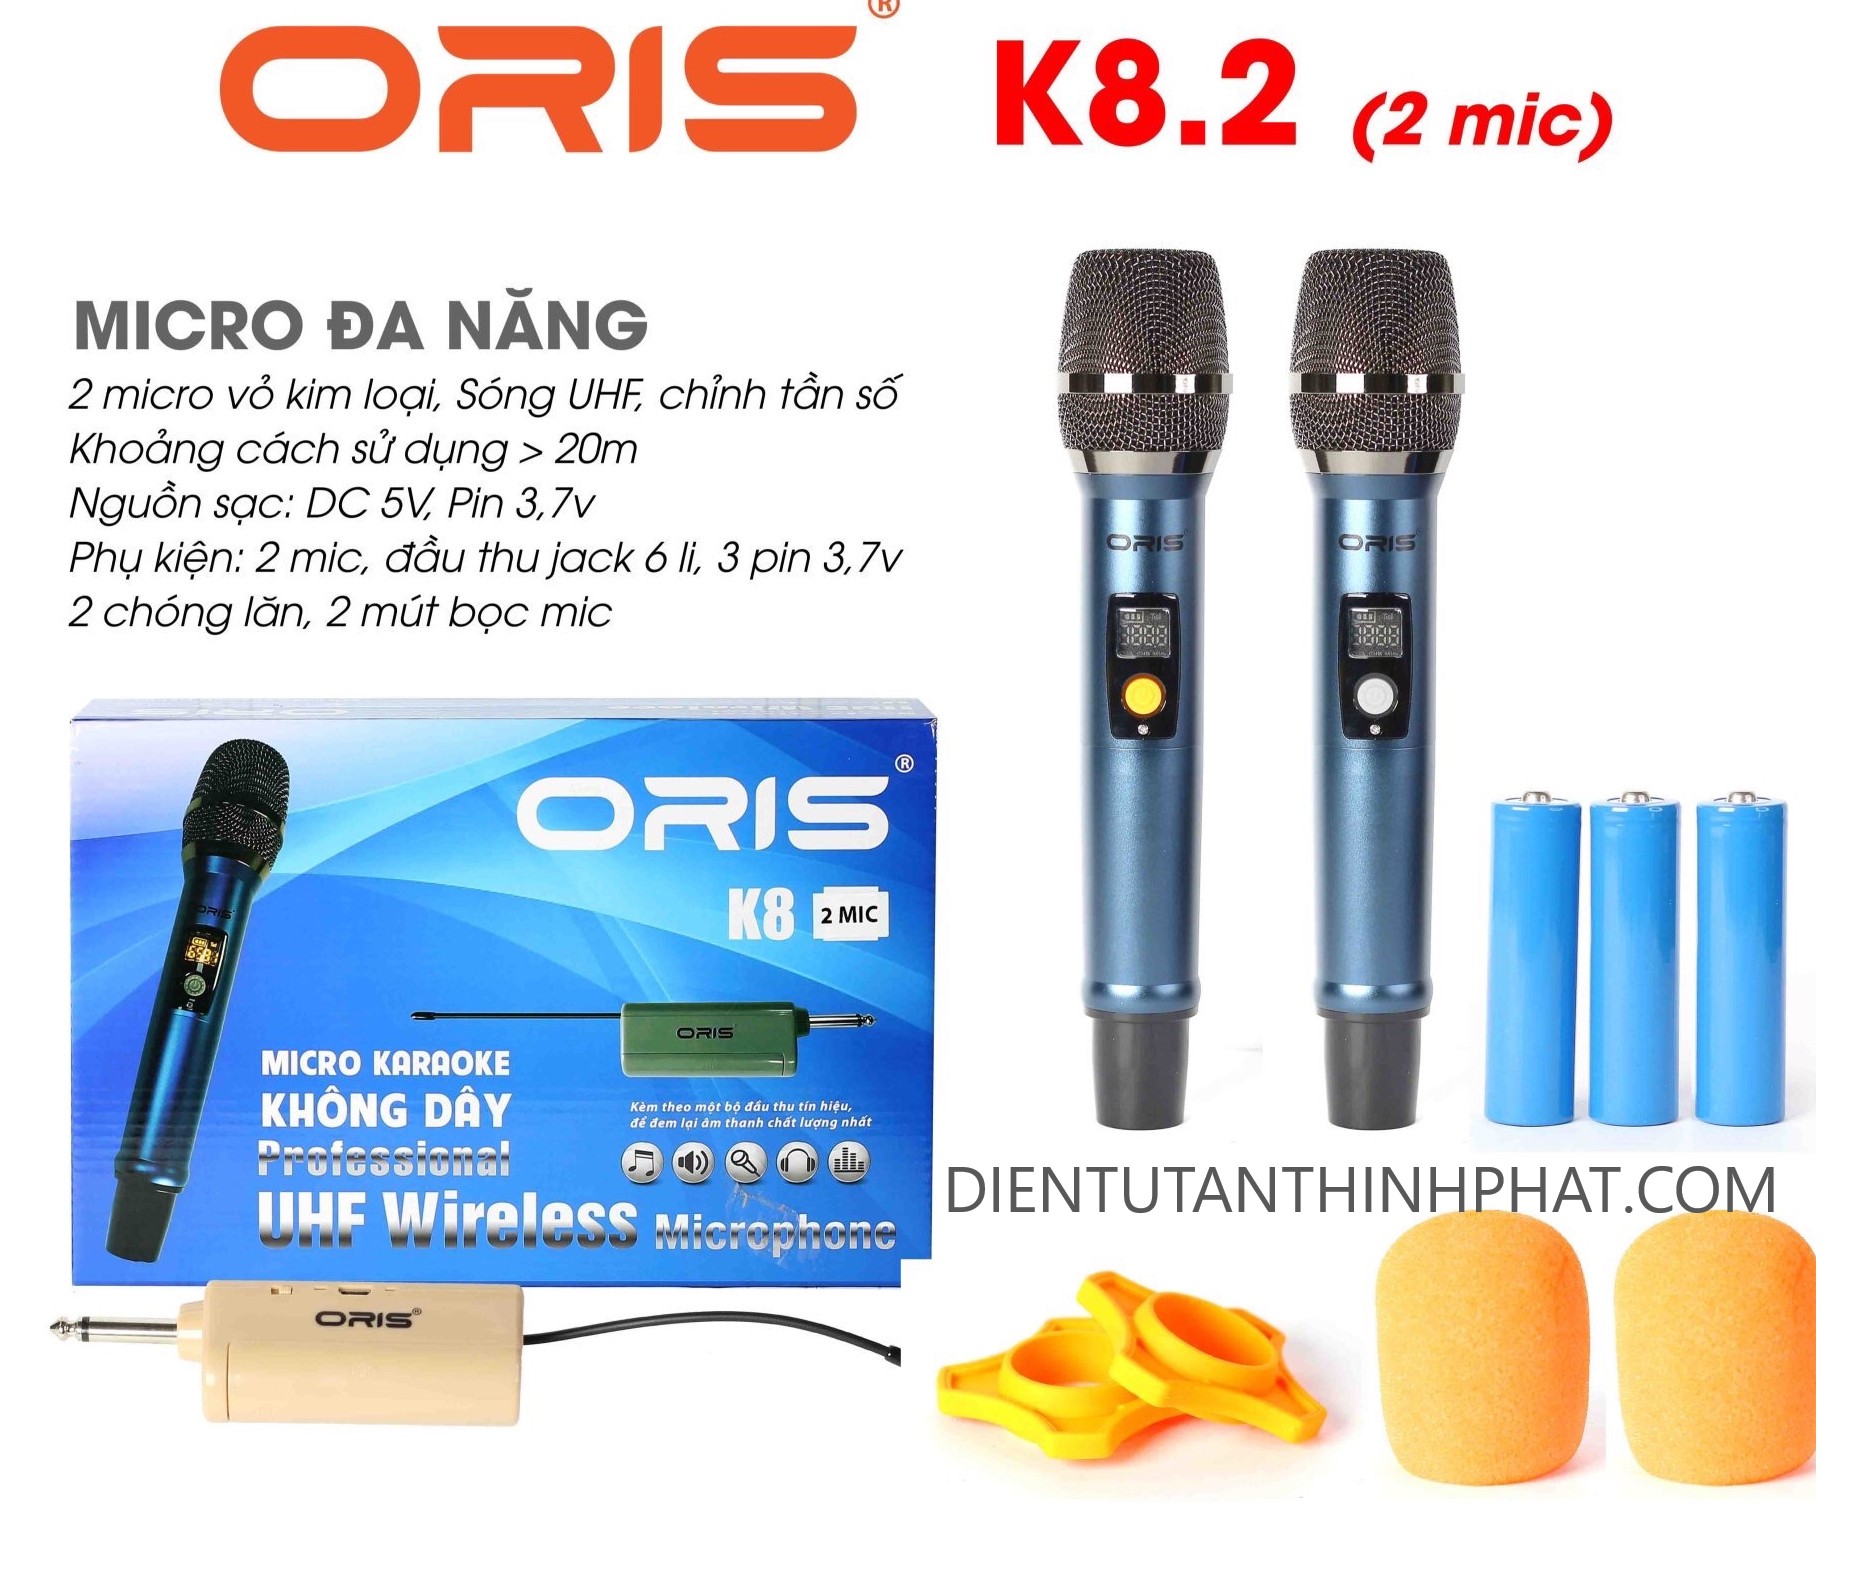 Bộ 2 micro karaoke đa năng không dây oris K8.2 sử dụng tần số UHF dùng cho loa kéo, amply, vang, mixer